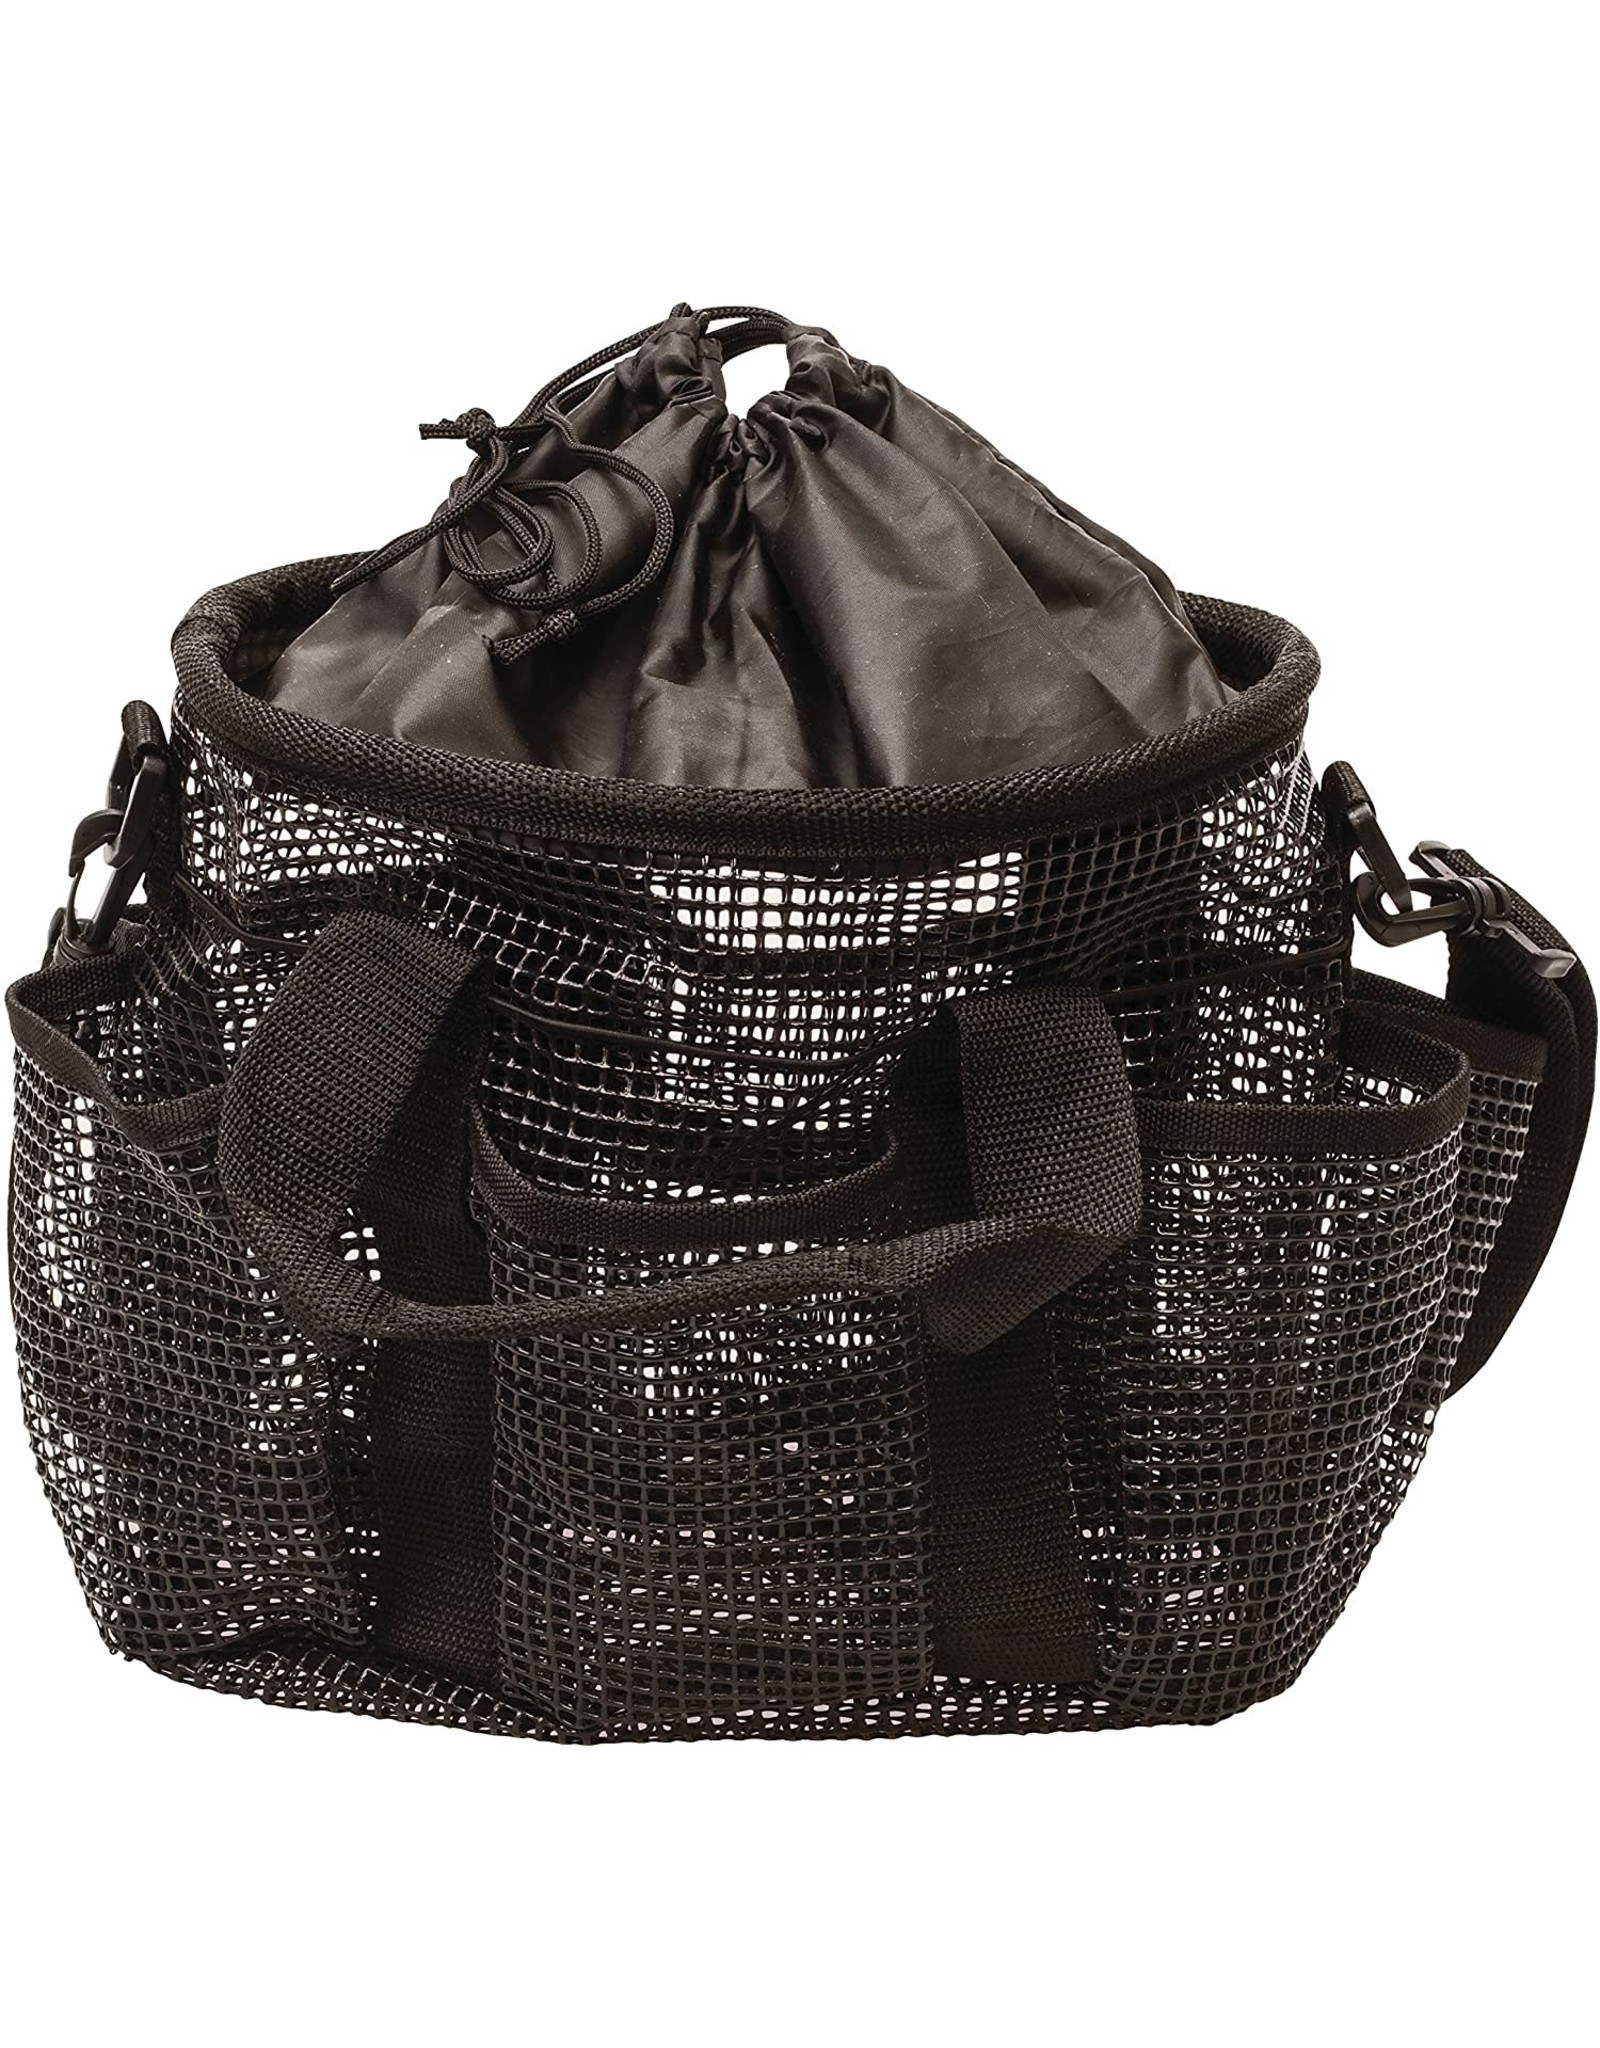 Mesh Bag- Black Plastic- 65-2053-B1